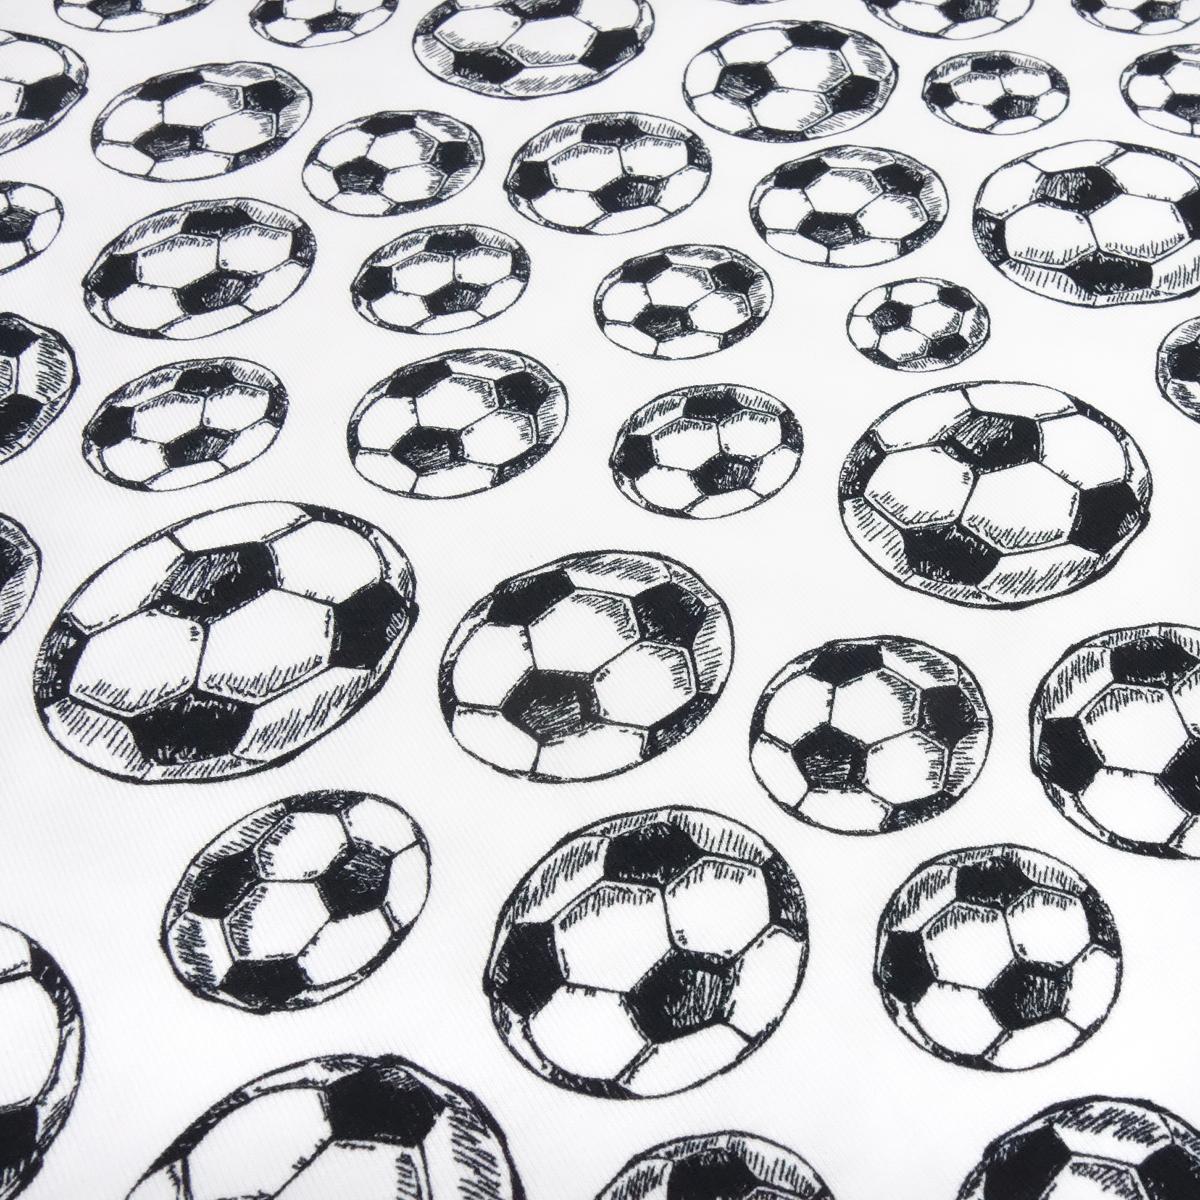 Stoff Baumwolle Jersey Fußball Soccer Bälle Design weiß schwarz Kinderstoff Kleiderstoff